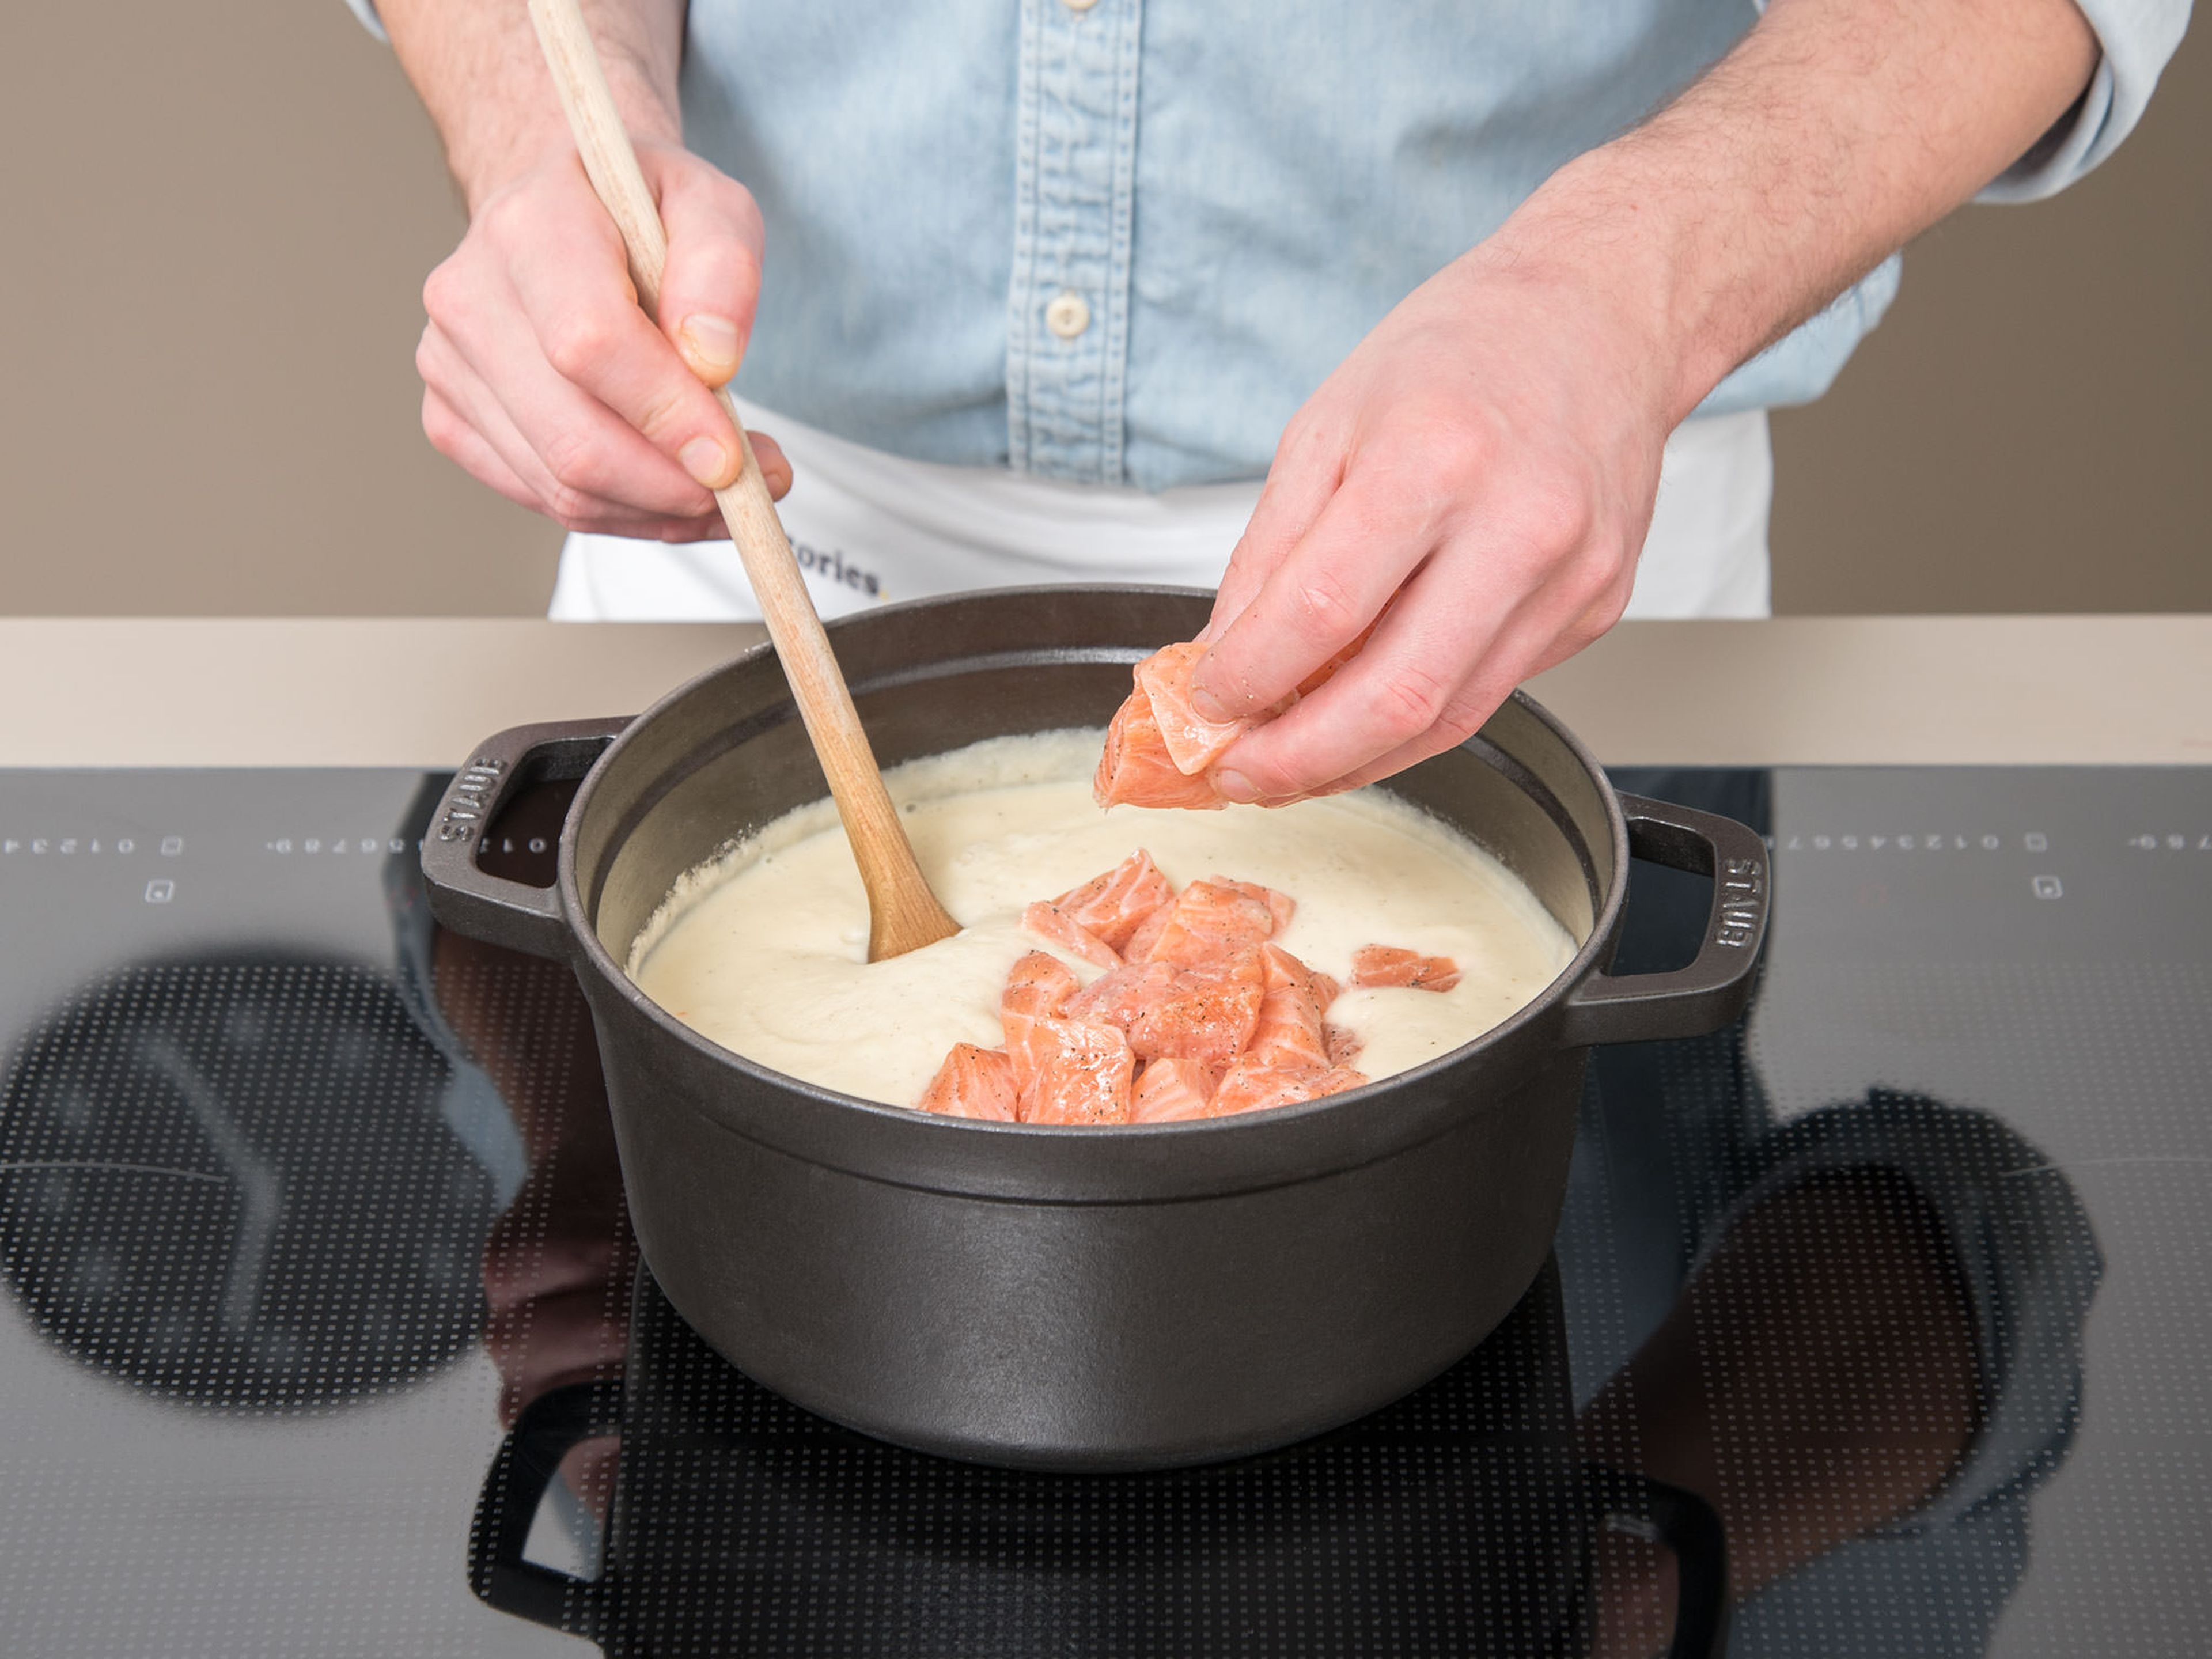 Lachsfilet in die Suppe geben und erwärmen bis das Lachsfilet gar ist. Die Suppe mit einer Scheibe Brot servieren. Mit Schnittlauch, Meerrettich und Kürbiskernöl garnieren.